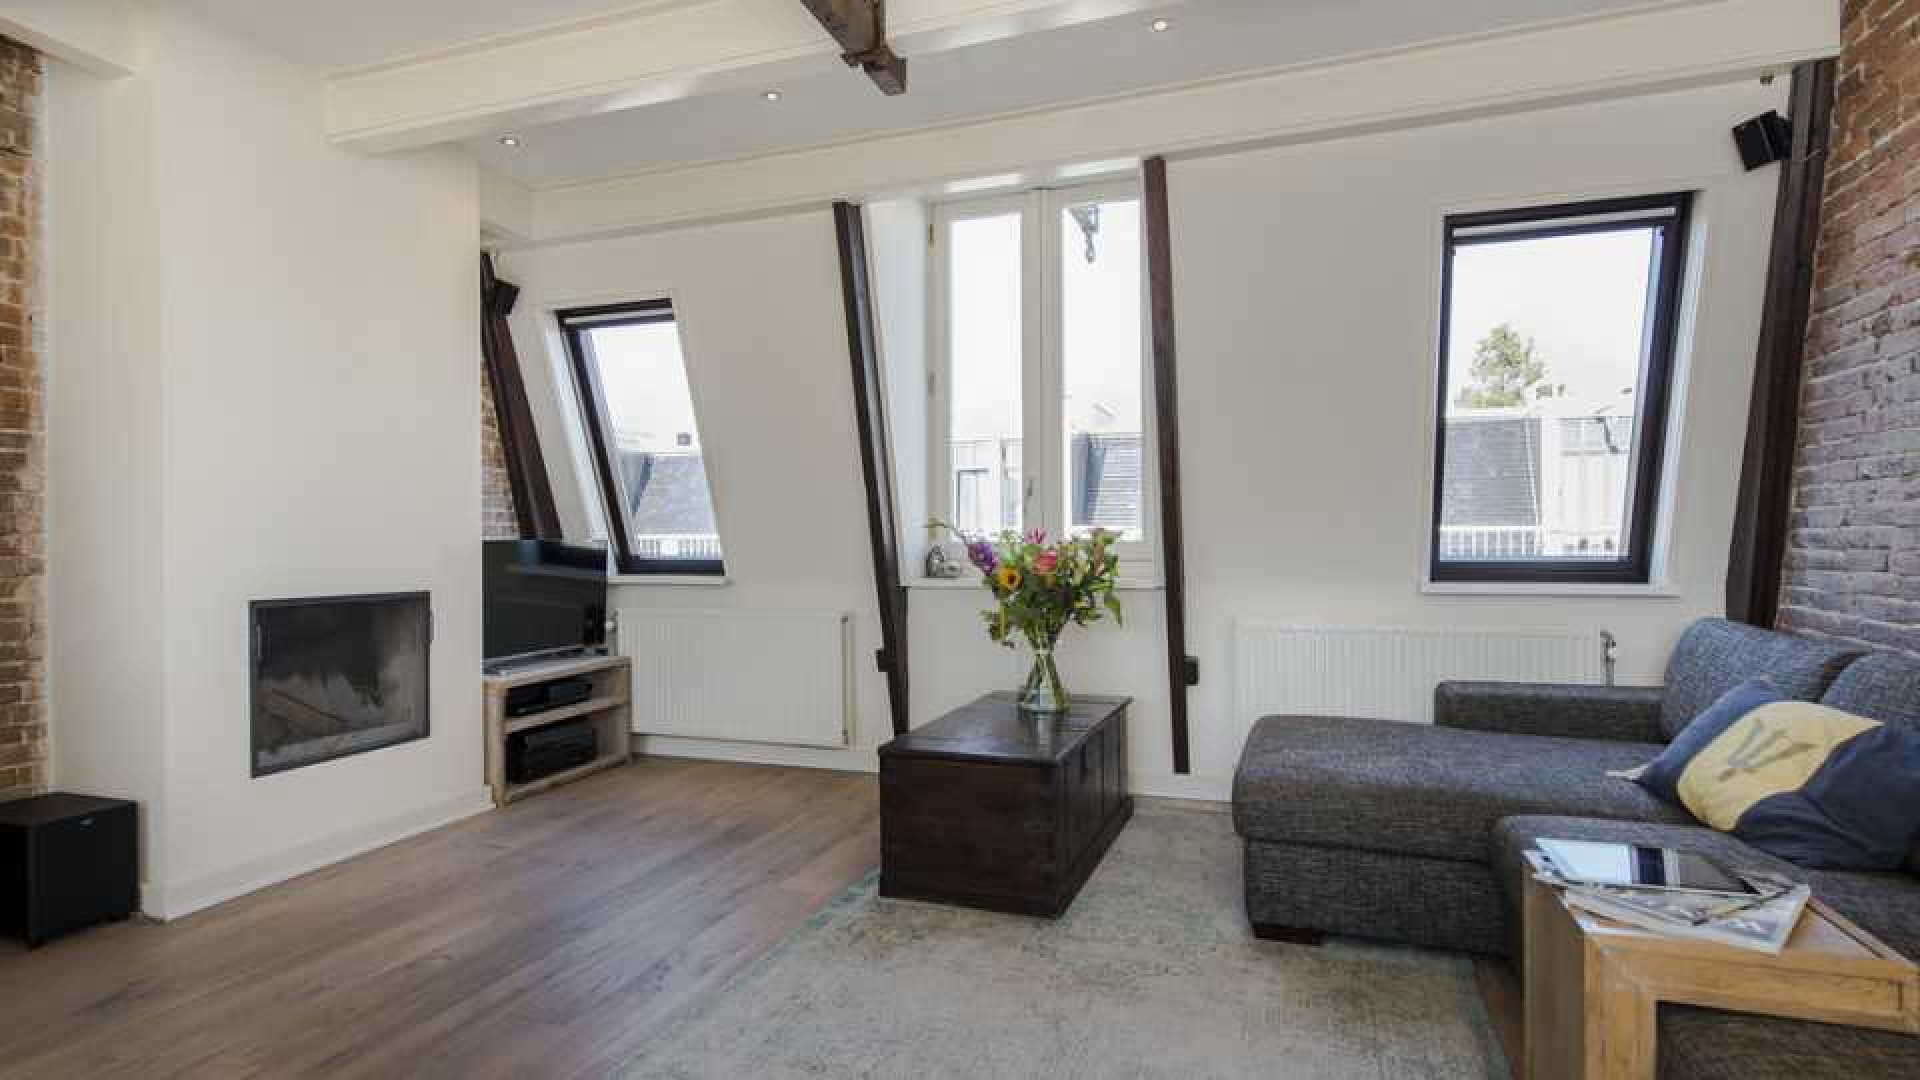 Armin van Buuren koopt luxe dubbel bovenhuis in Amsterdam Oud-West. Zie foto's 8